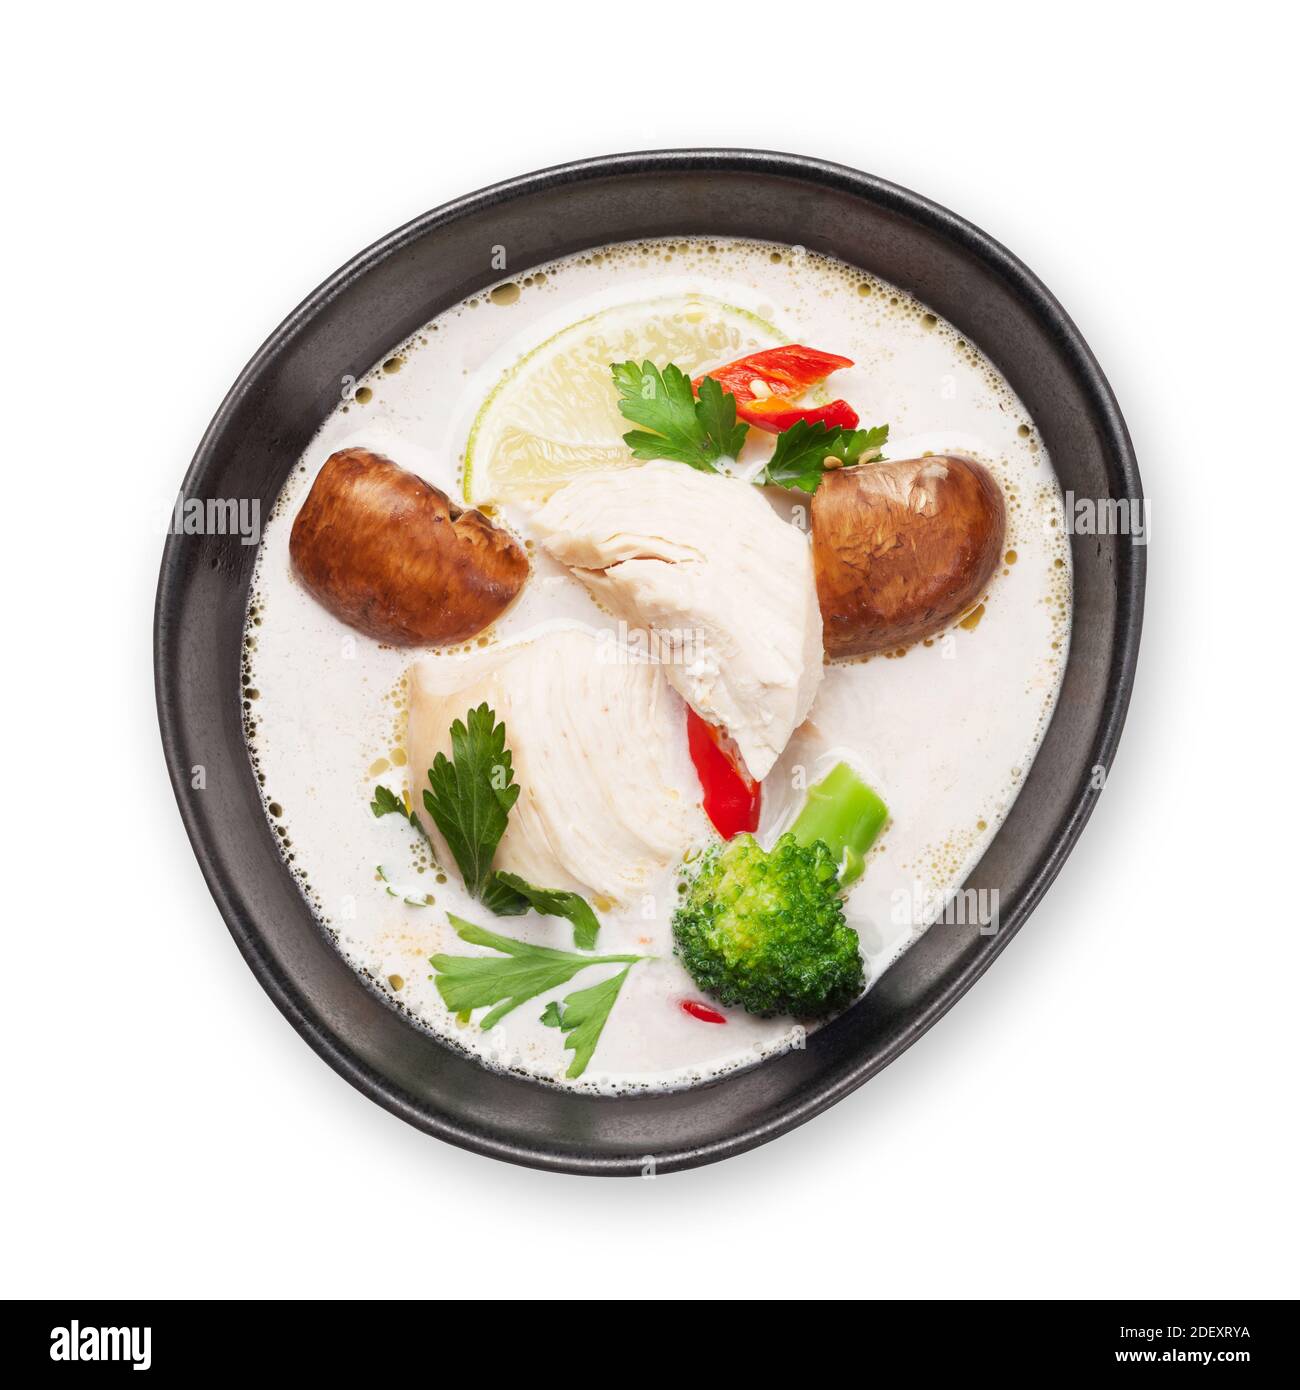 Tom Kha traditionelle thai-Suppe mit Huhn, Pilzen, Kokosmilch und heißen Gewürzen. Isoliert auf weißem Hintergrund. Draufsicht flach liegend Stockfoto